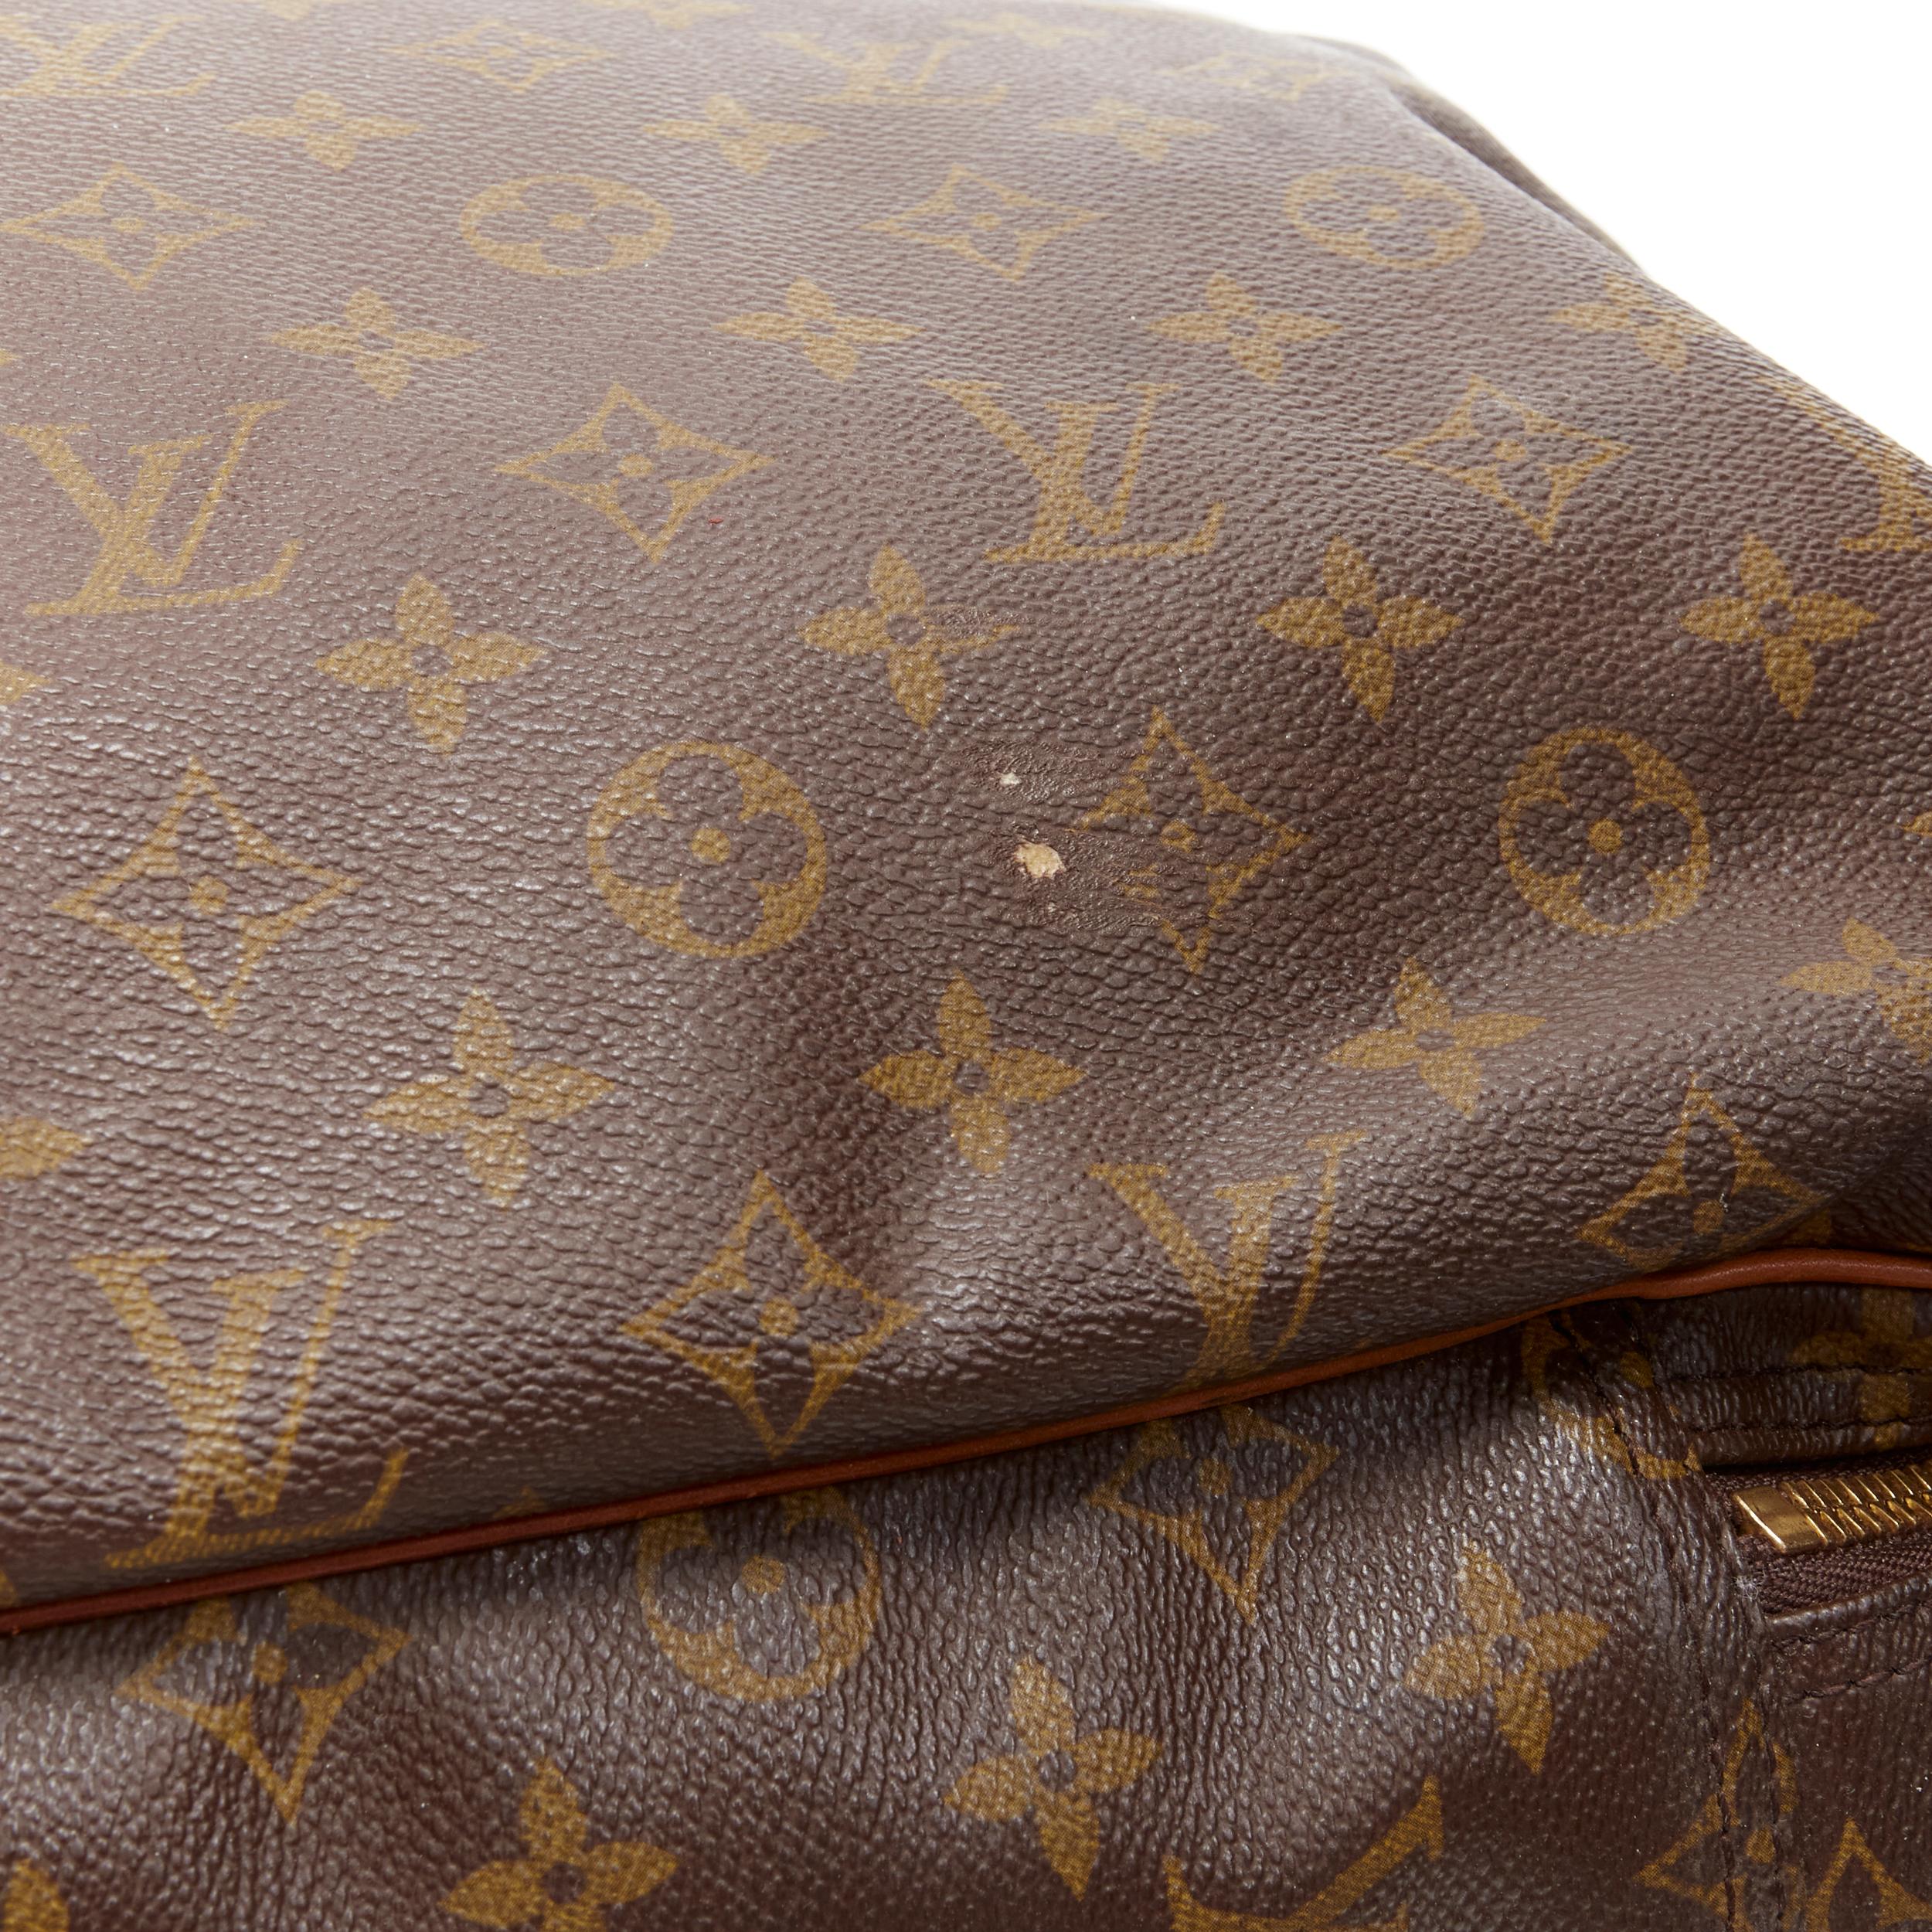 LOUIS VUITTON VIntage Alize brown monogram leather trim 2 compartment bag For Sale 5